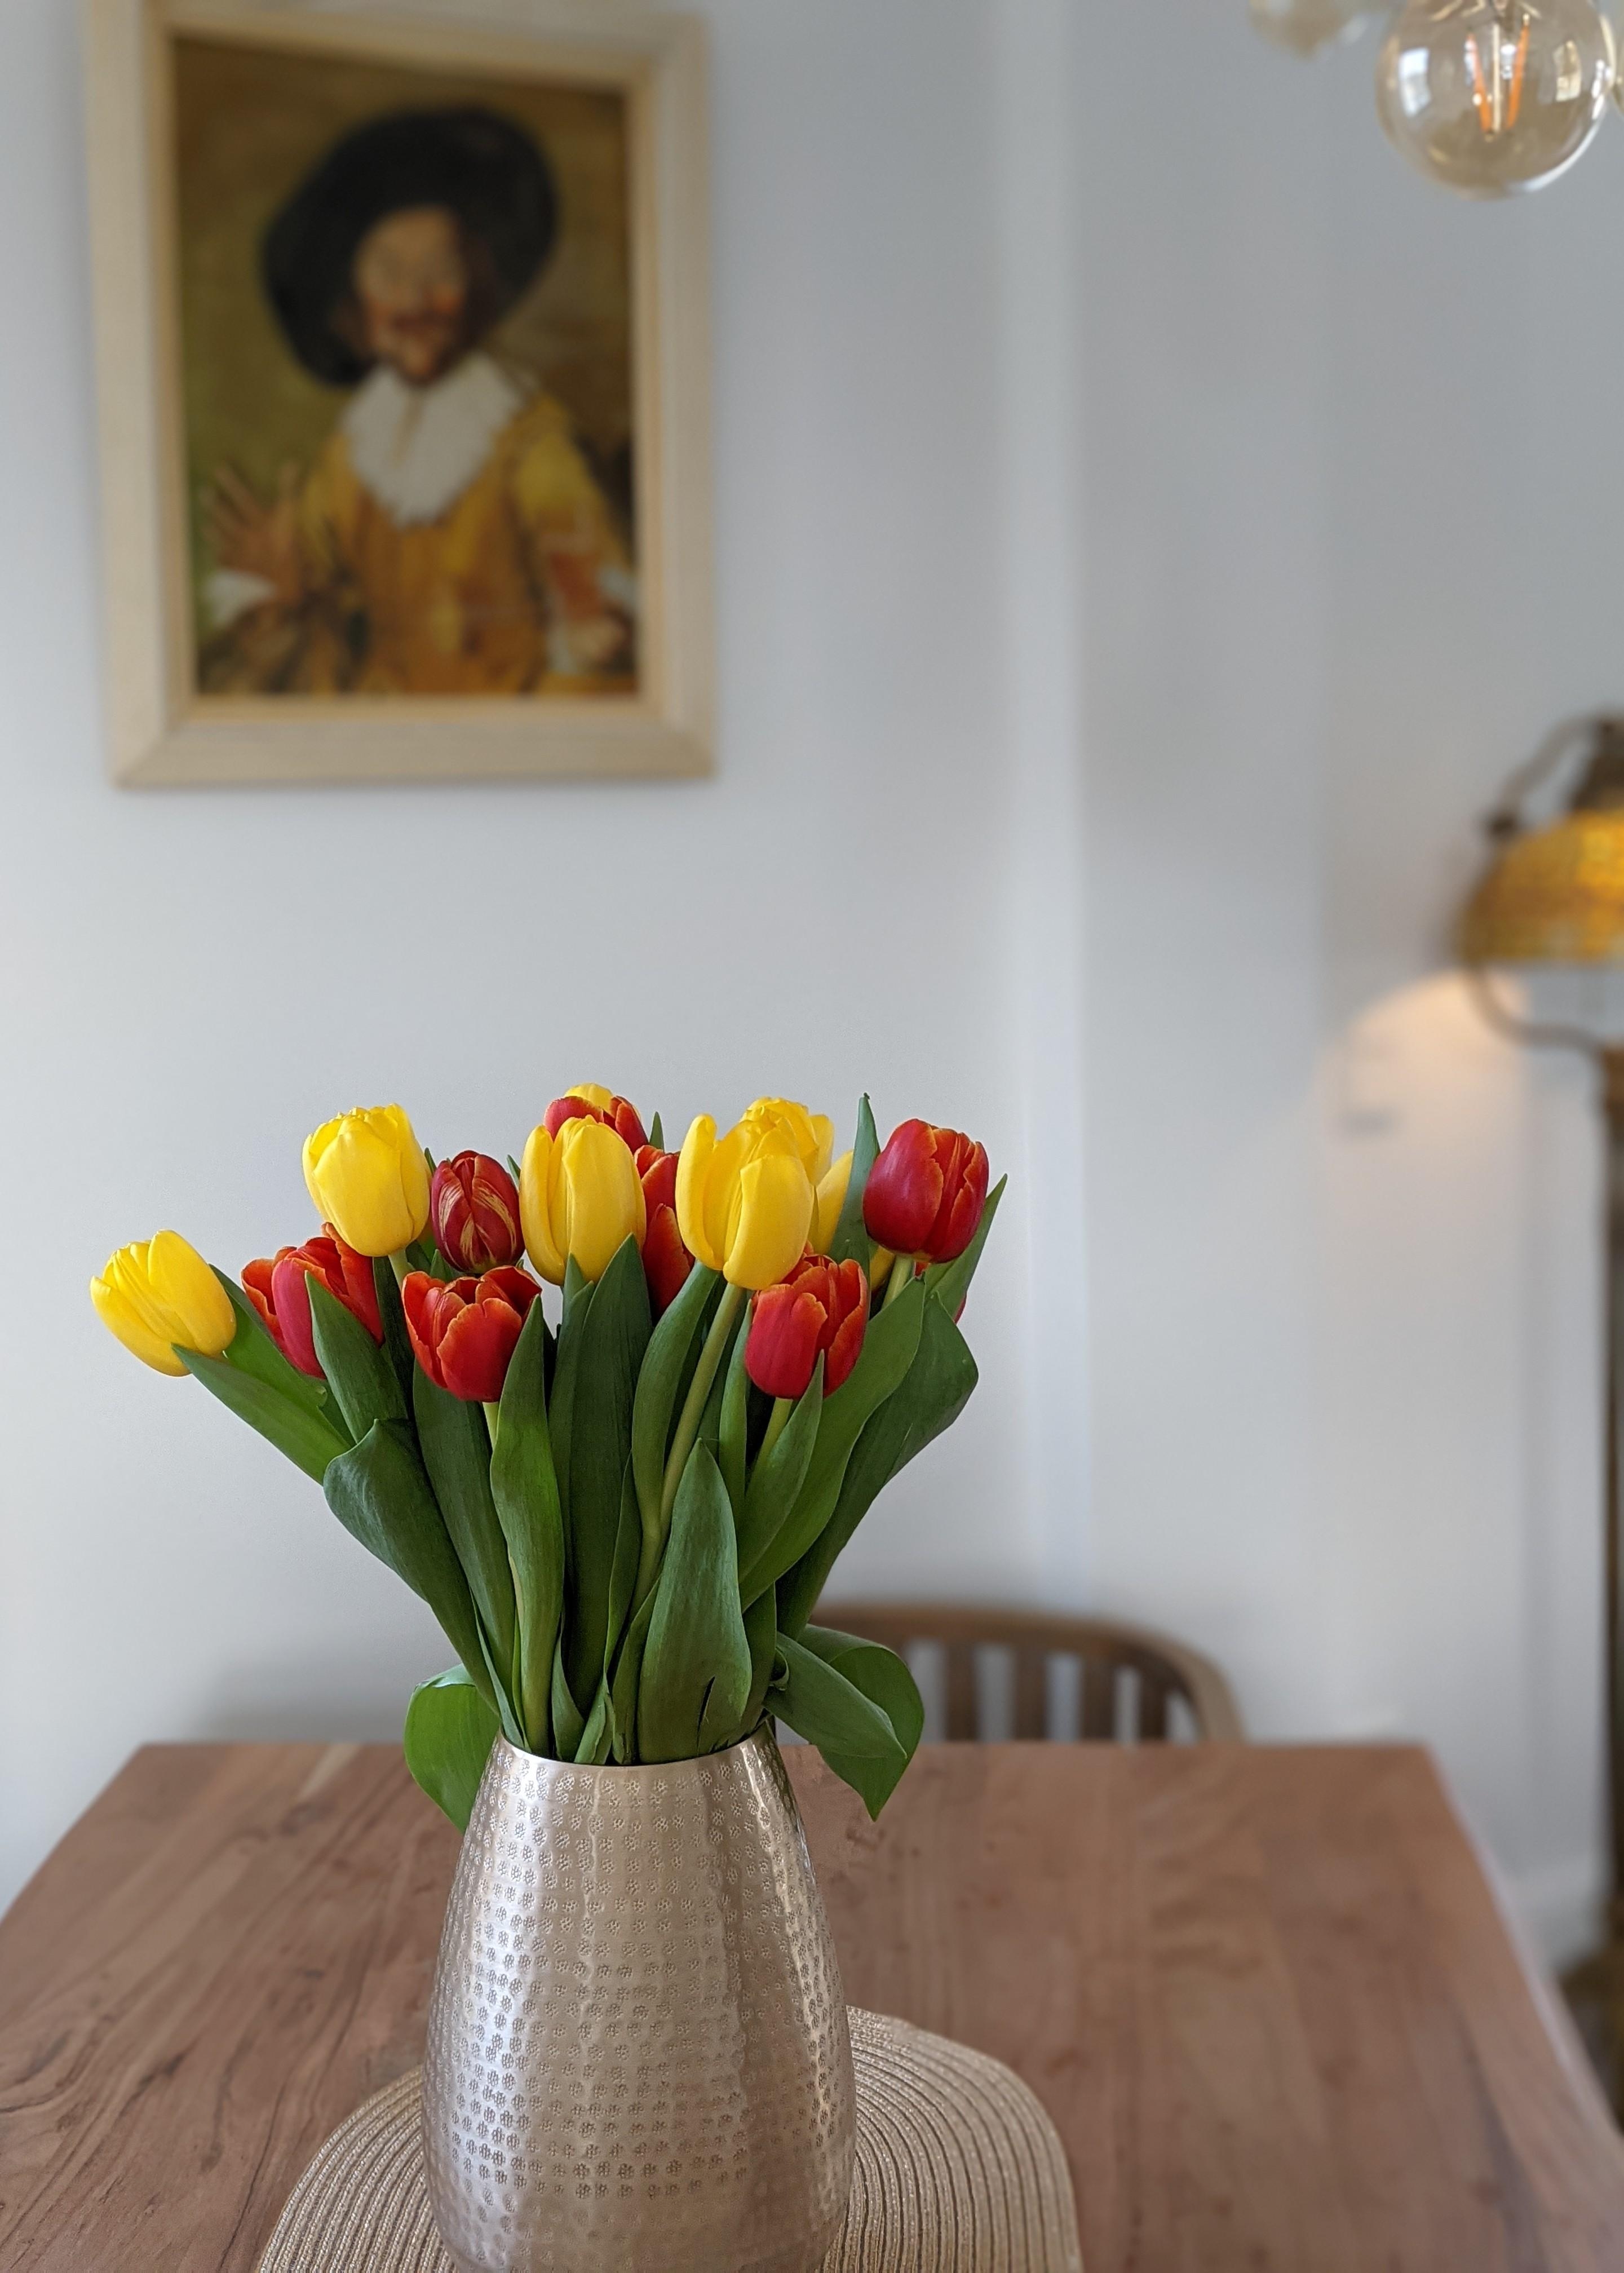 Wenn die ersten Tulpen ins Haus flattern, dann ist es Frühling.🌷
#blumenliebe #blumen #esstisch